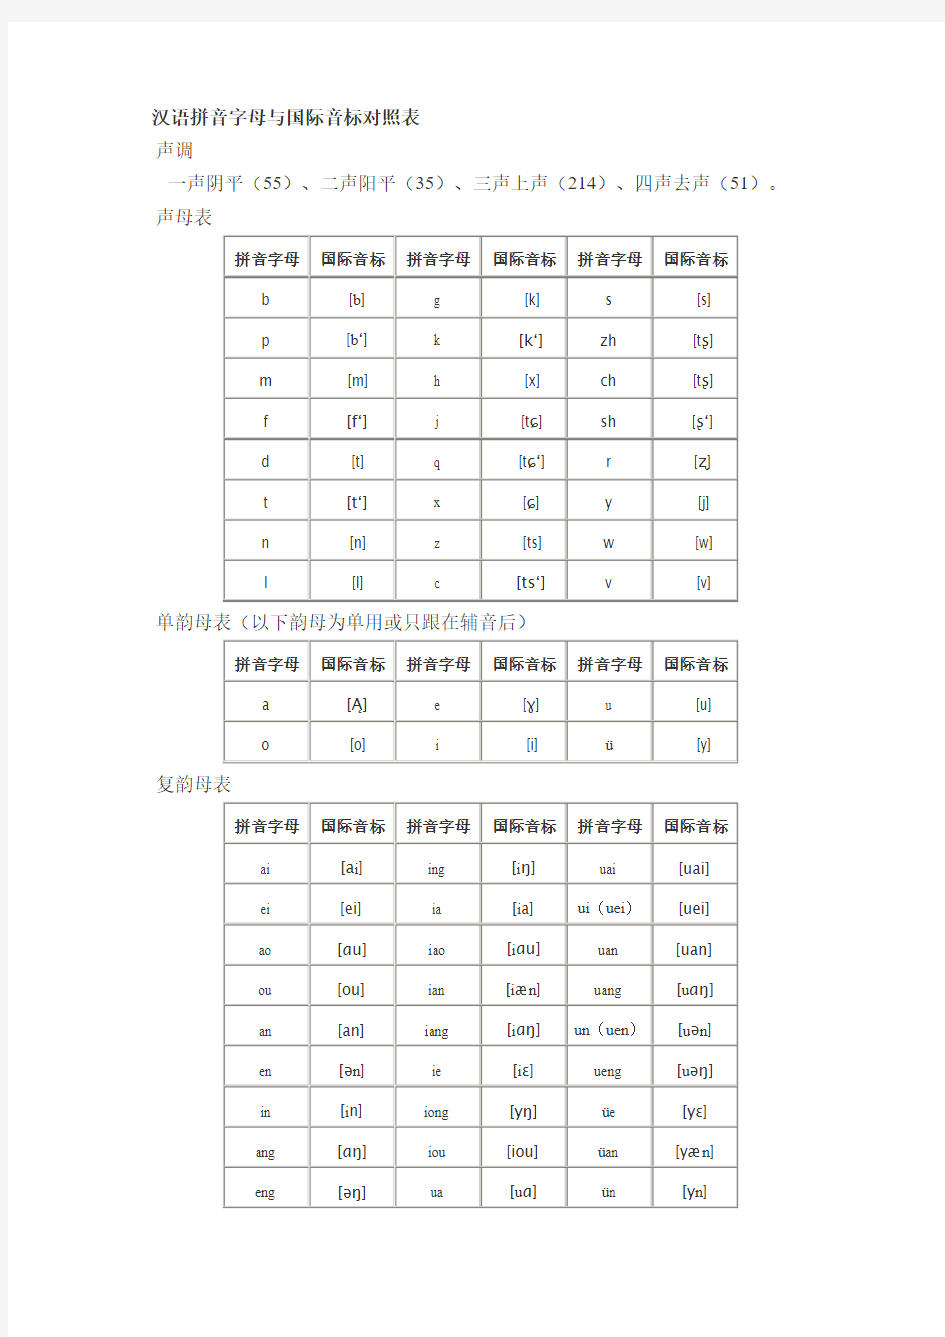 国际音标-汉语拼音对照表